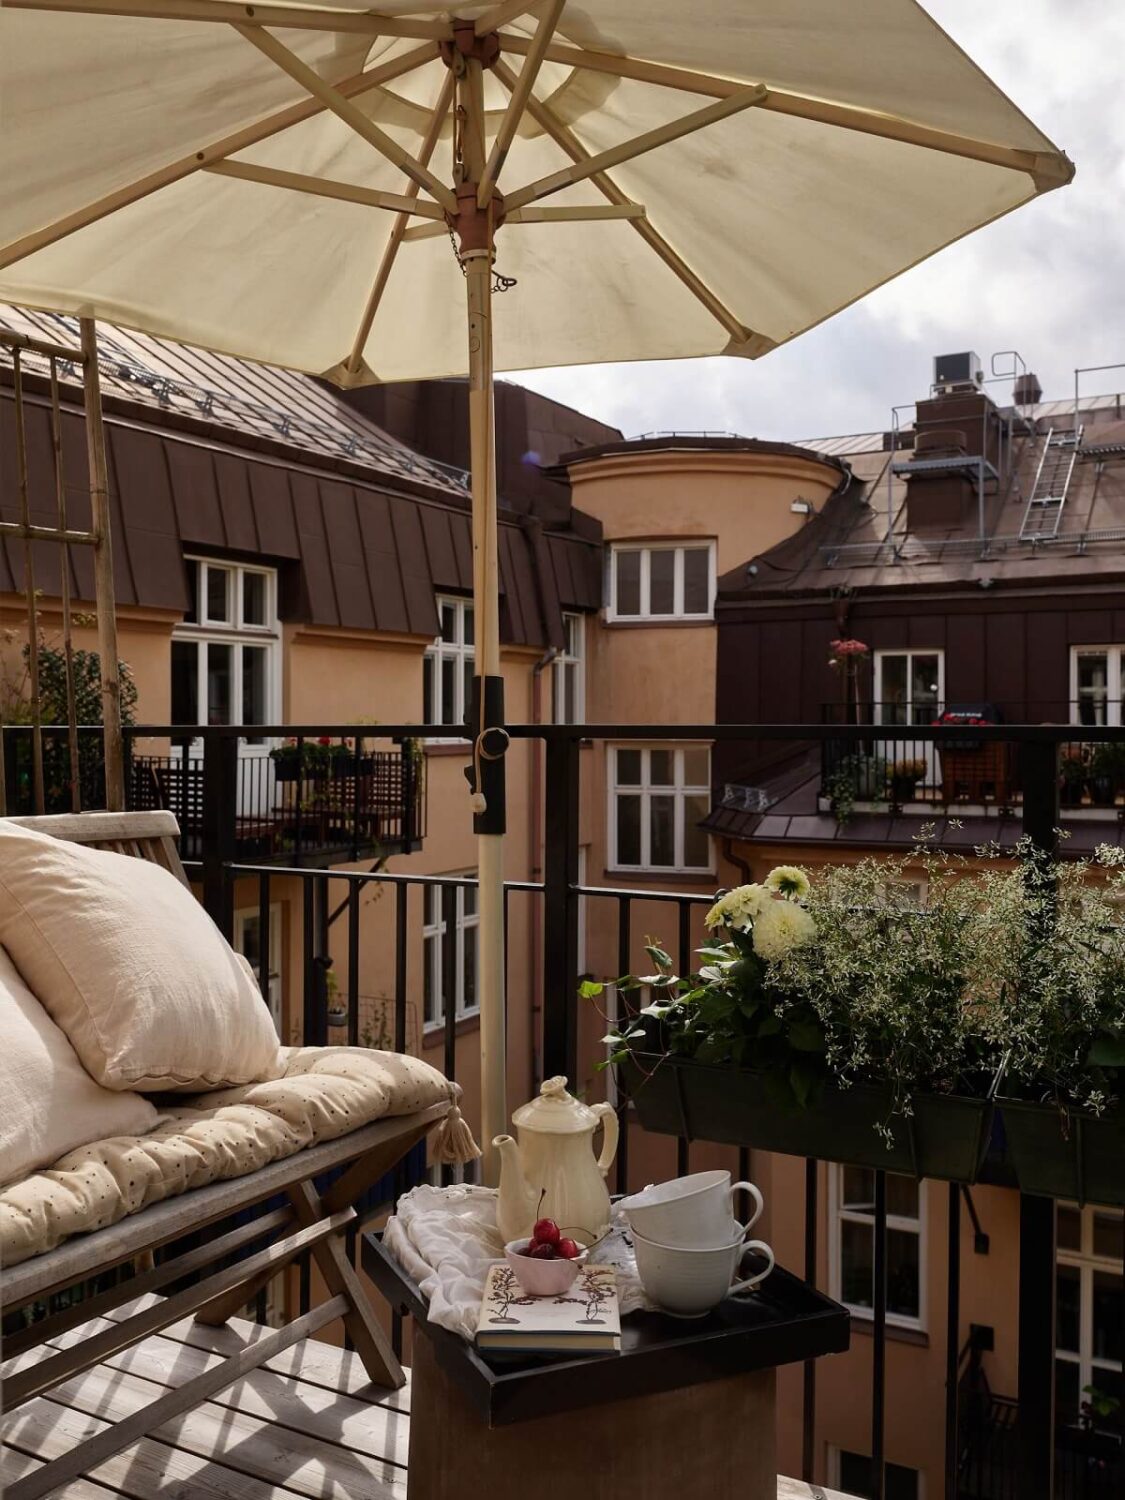 sunny-balcony-overlooking-courtyard-nordroom